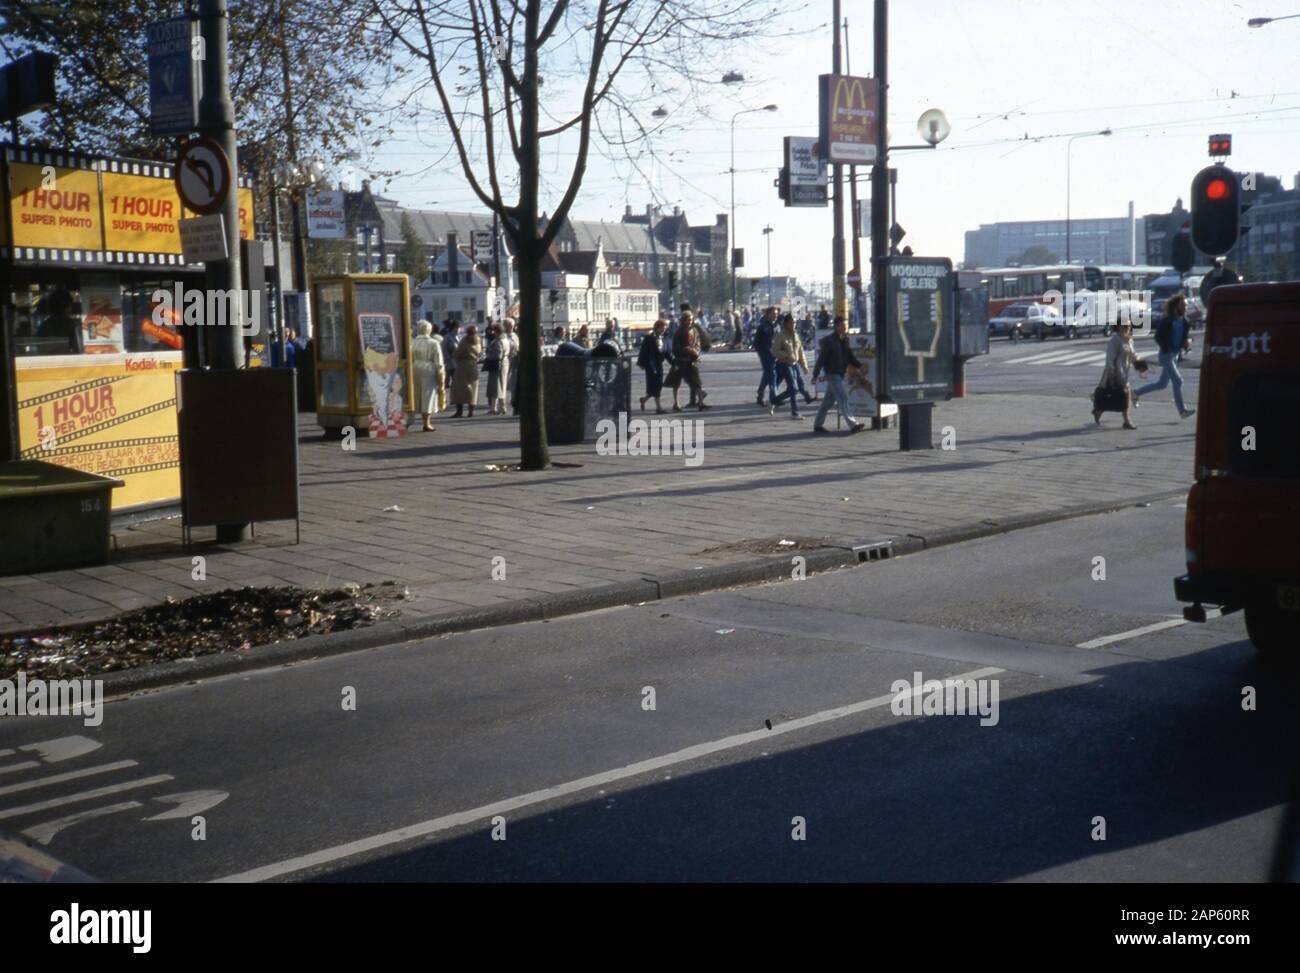 Mehrere amerikanische Markengeschäfte, darunter ein Kodak Fotoentwickler für eine Stunde und eine Beschilderung für ein McDonald's Restaurant, sind in einem geschäftigen Stadtzentrum, Niederlande, 1987, zu sehen. () Stockfoto